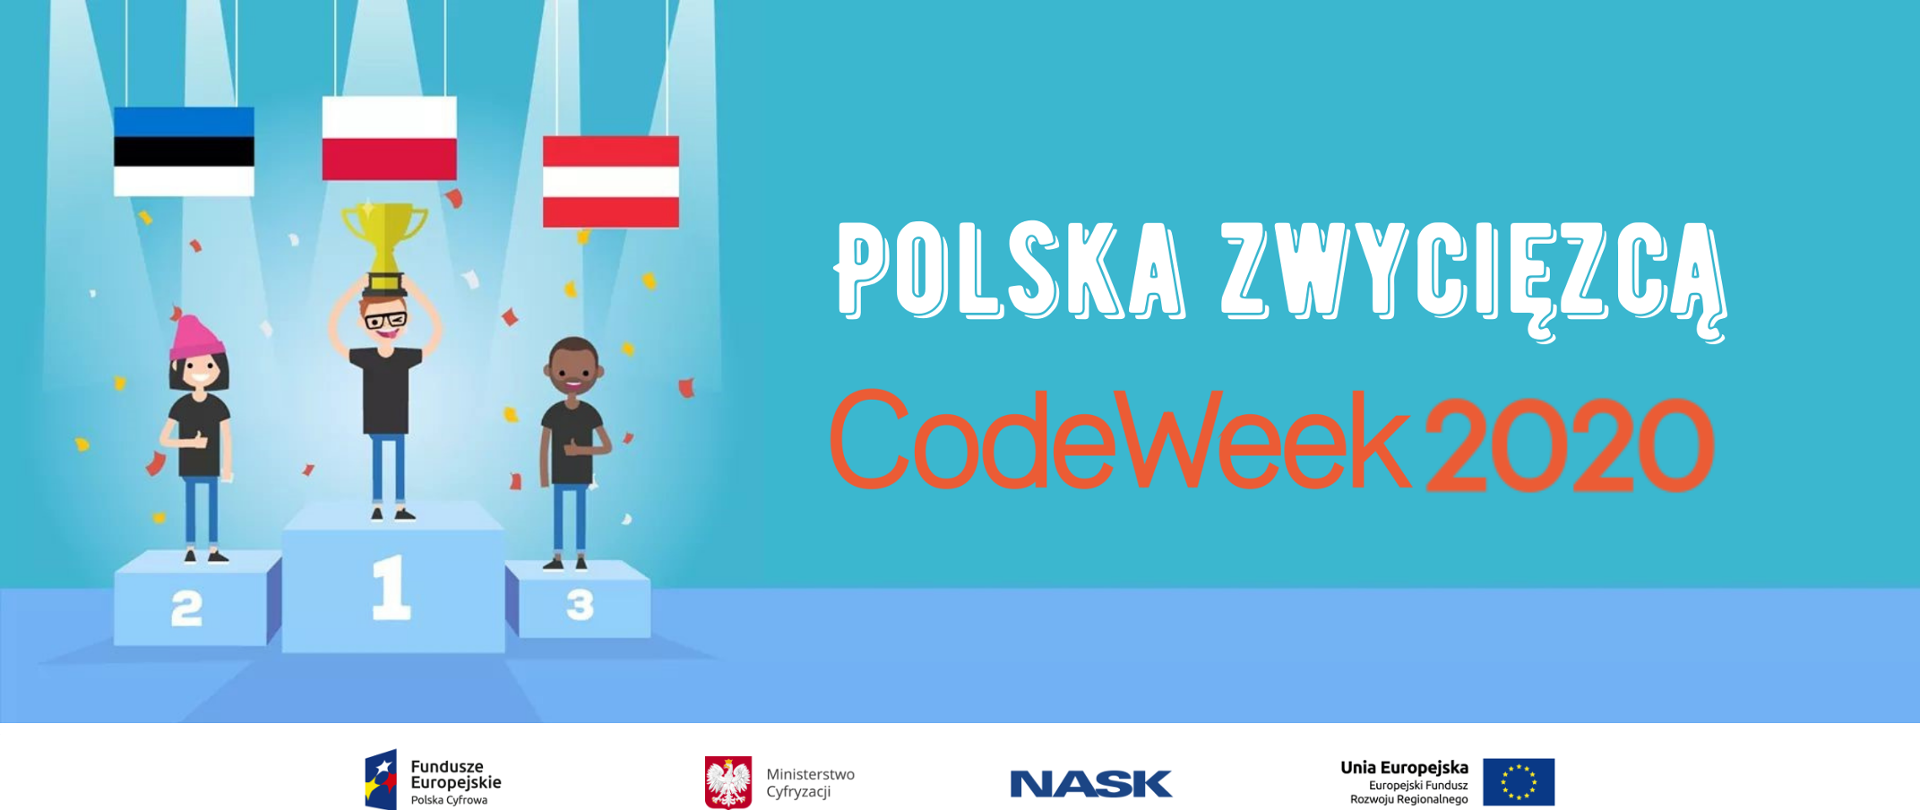 Grafika przedstawia animowaną ilustrację trzech postaci stojących na podium, nad którym wiszą flagi: Estonii, Polski oraz Austrii. Grafika ma niebieskie tło. Na środku grafiki znajduje się biało pomarańczowy napis, który brzmi: “Polska zwycięzcą CodeWeek2020”. Na samym dole grafiki znajduje się ciąg logotypów na białym tle: logo Fundusze Europejskie Polska Cyfrowa, logo Ministerstwo Cyfryzacji, logo NASK, logo Unia Europejska Europejski Fundusz Rozwoju Regionalnego.